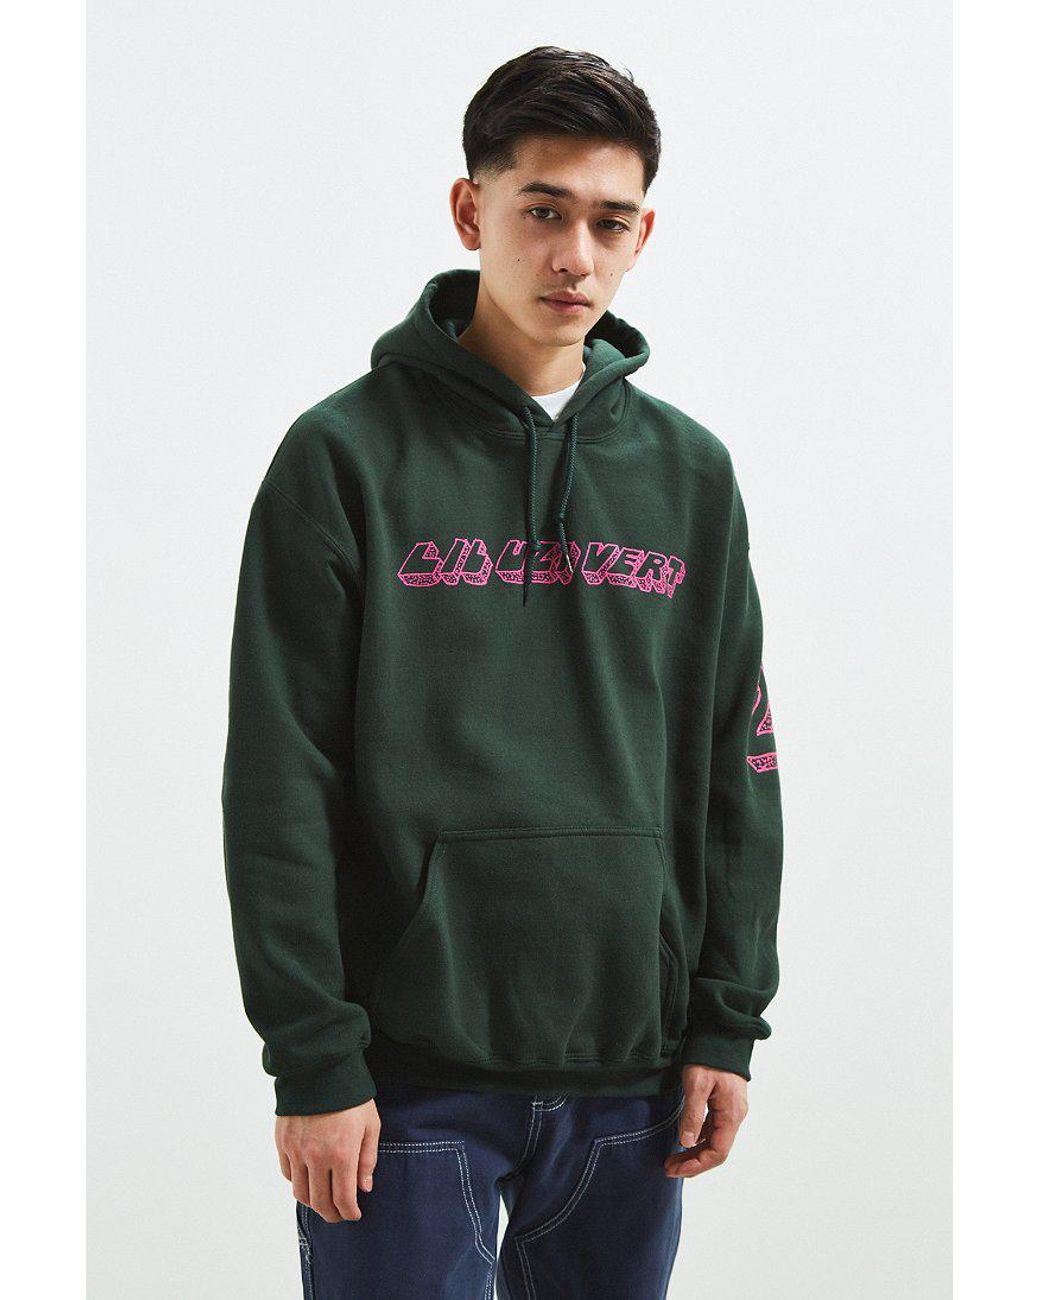 Urban Outfitters Lil Vert Hoodie Sweatshirt in | Lyst